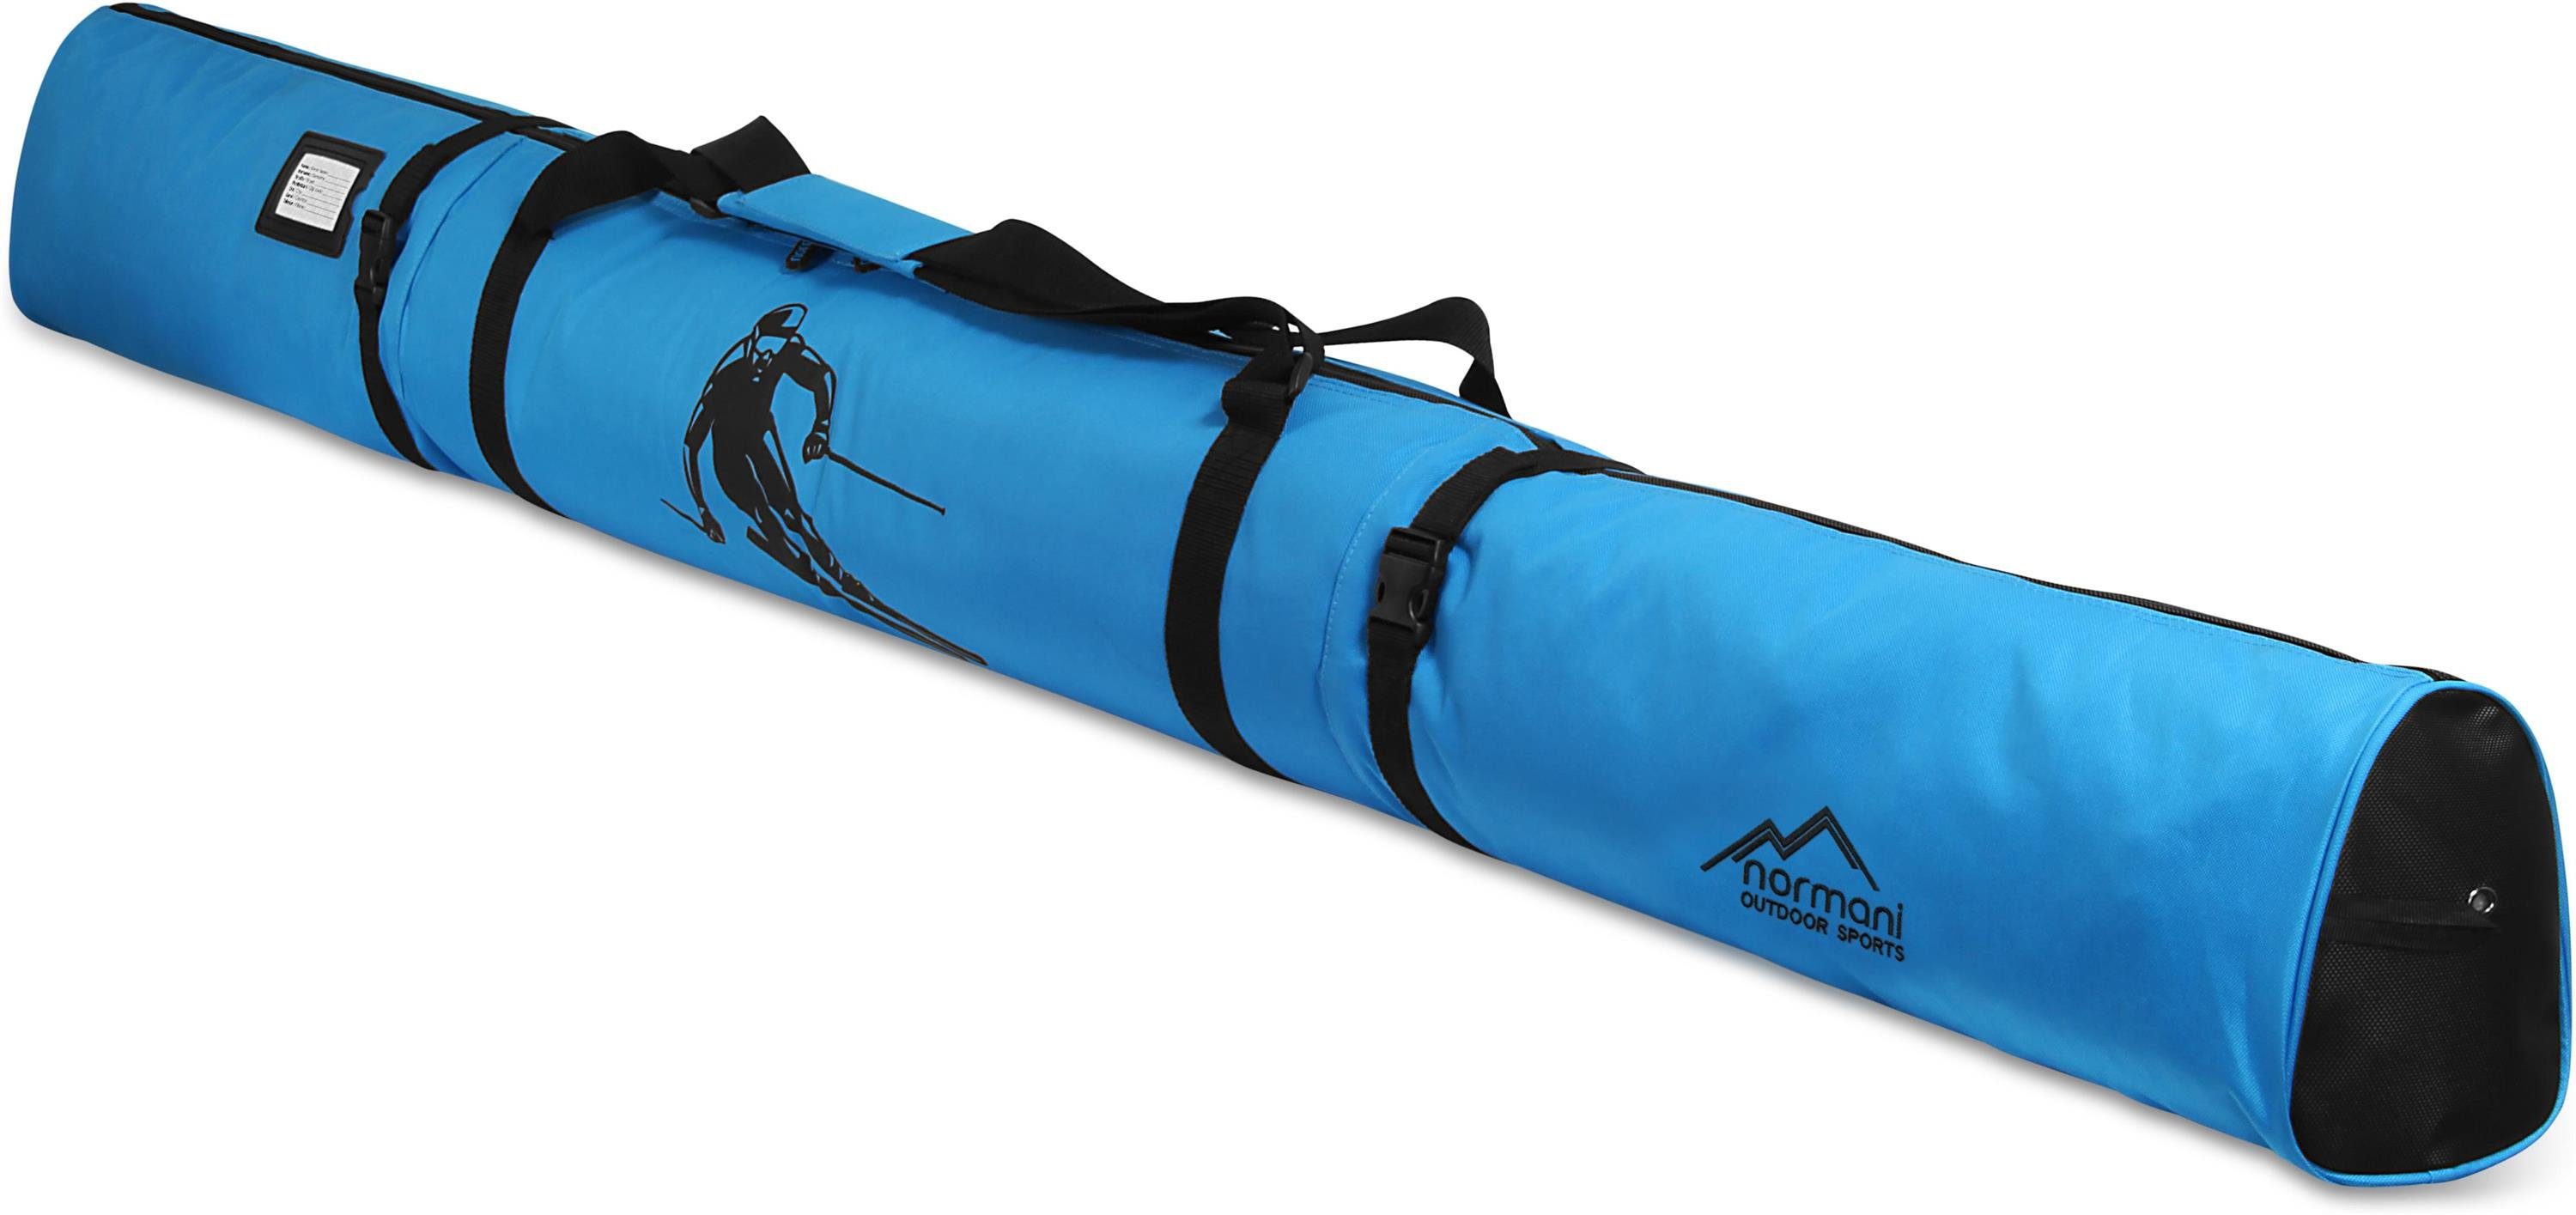 normani Sporttasche Skitasche Alpine Run 200, Skisack - Skitasche für Skier und Skistöcke Transporttasche Aufbewahrungstasche Blau